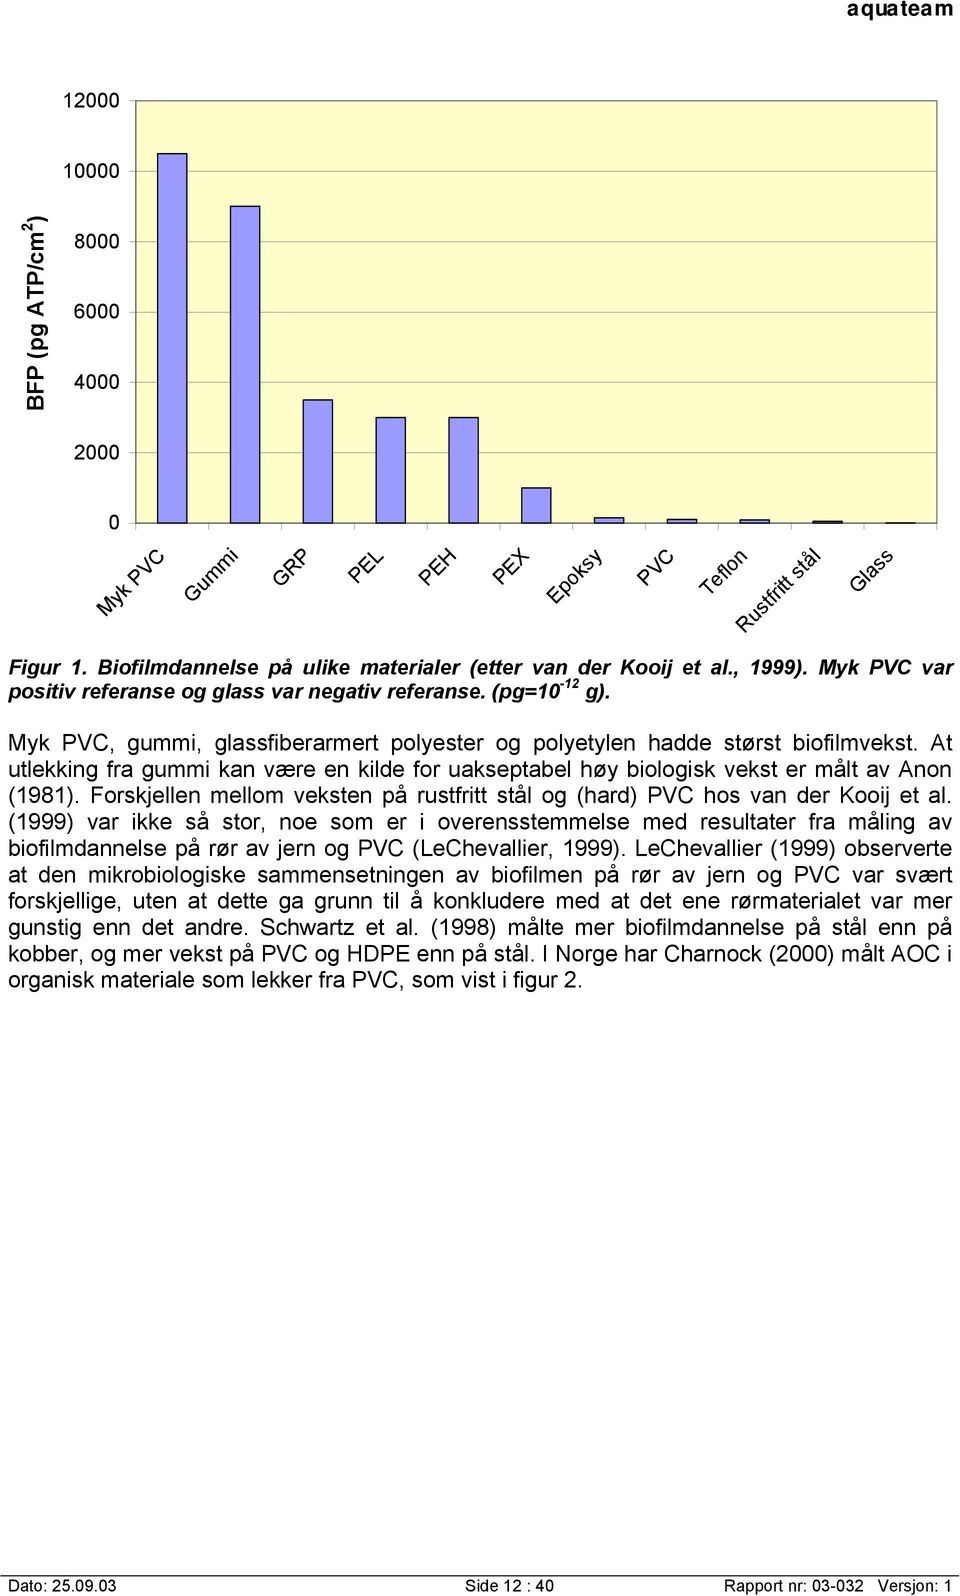 At utlekking fra gummi kan være en kilde for uakseptabel høy biologisk vekst er målt av Anon (1981). Forskjellen mellom veksten på rustfritt stål og (hard) PVC hos van der Kooij et al.